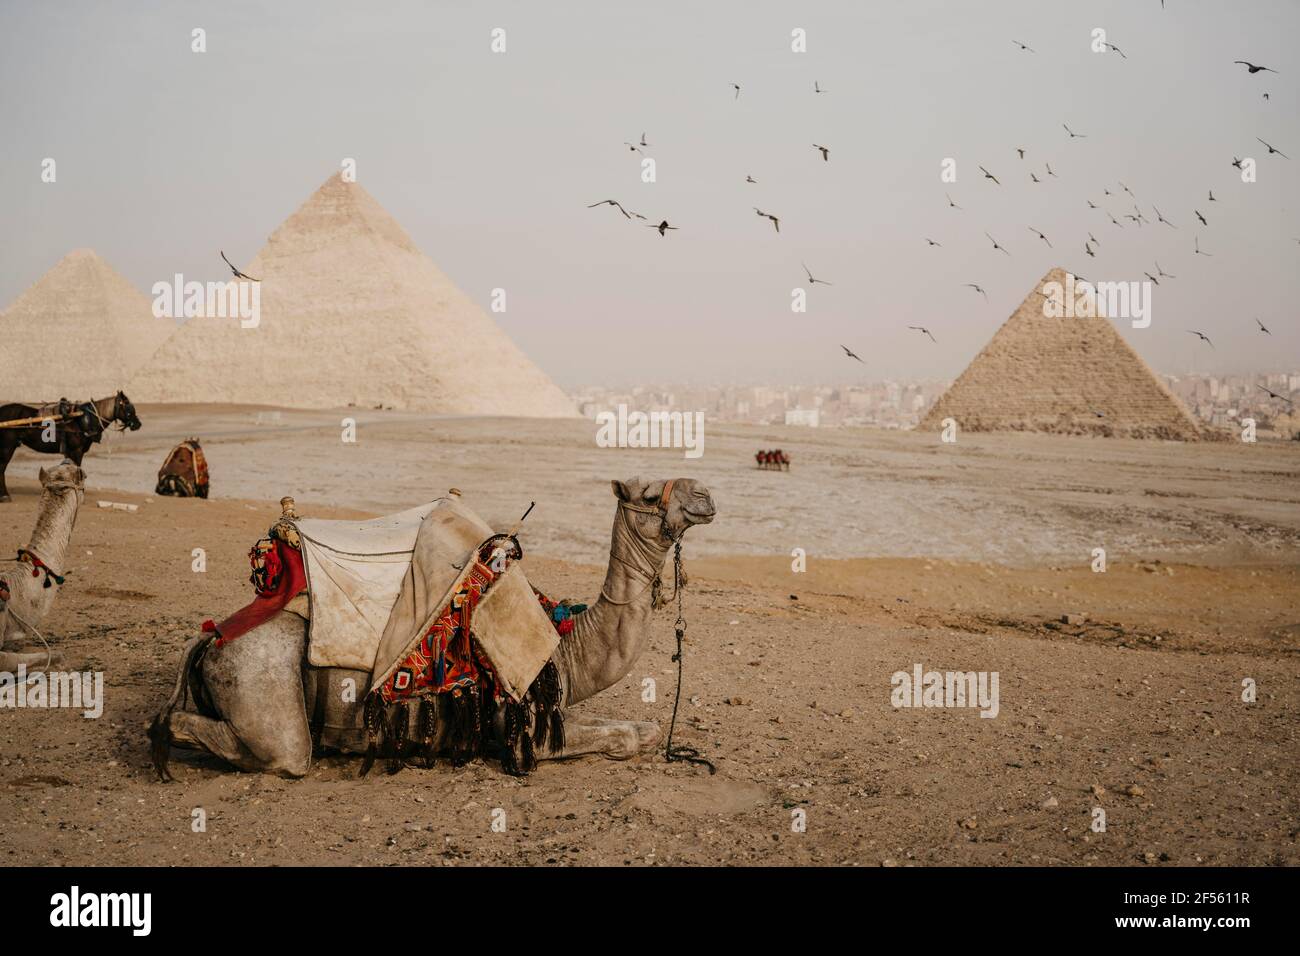 Égypte, le Caire, Flock d'oiseaux volant au-dessus de chameaux se reposant près des pyramides de Gizeh Banque D'Images